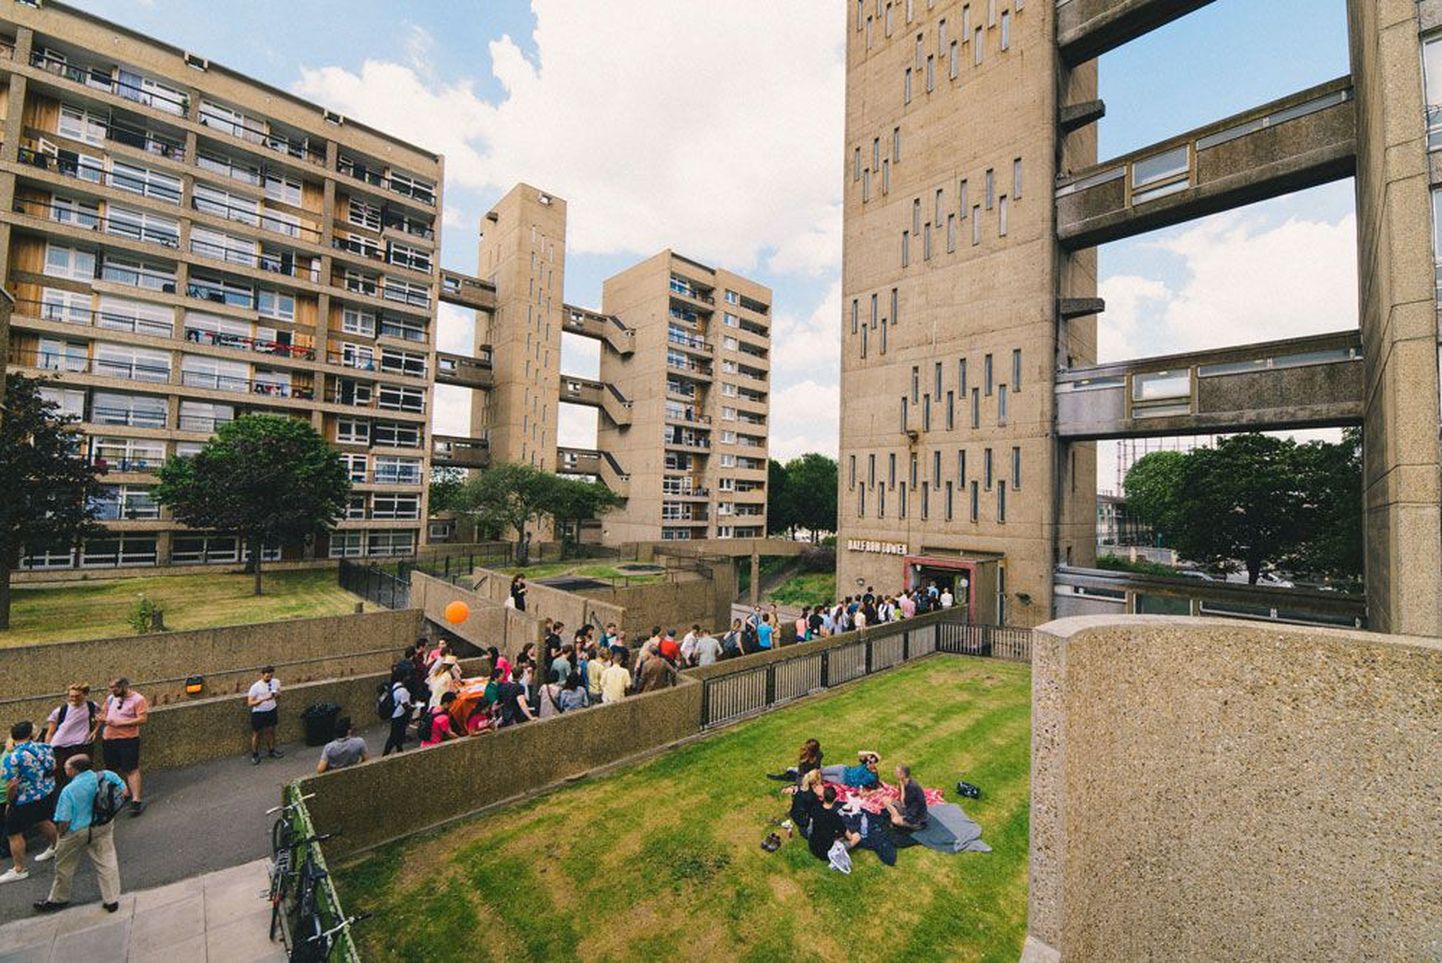 Aet Ader elas Londonis viibides arhitekti Ernö Goldfingeri 1967. aastal valminud kuulsas Balfron Toweris, mida peab brutalistliku arhitektuuri tippteoseks. «Ses hoones on tõepoolest realiseerunud modernistlike arhitektide ideed tänavatest õhus,» selgitab ta.